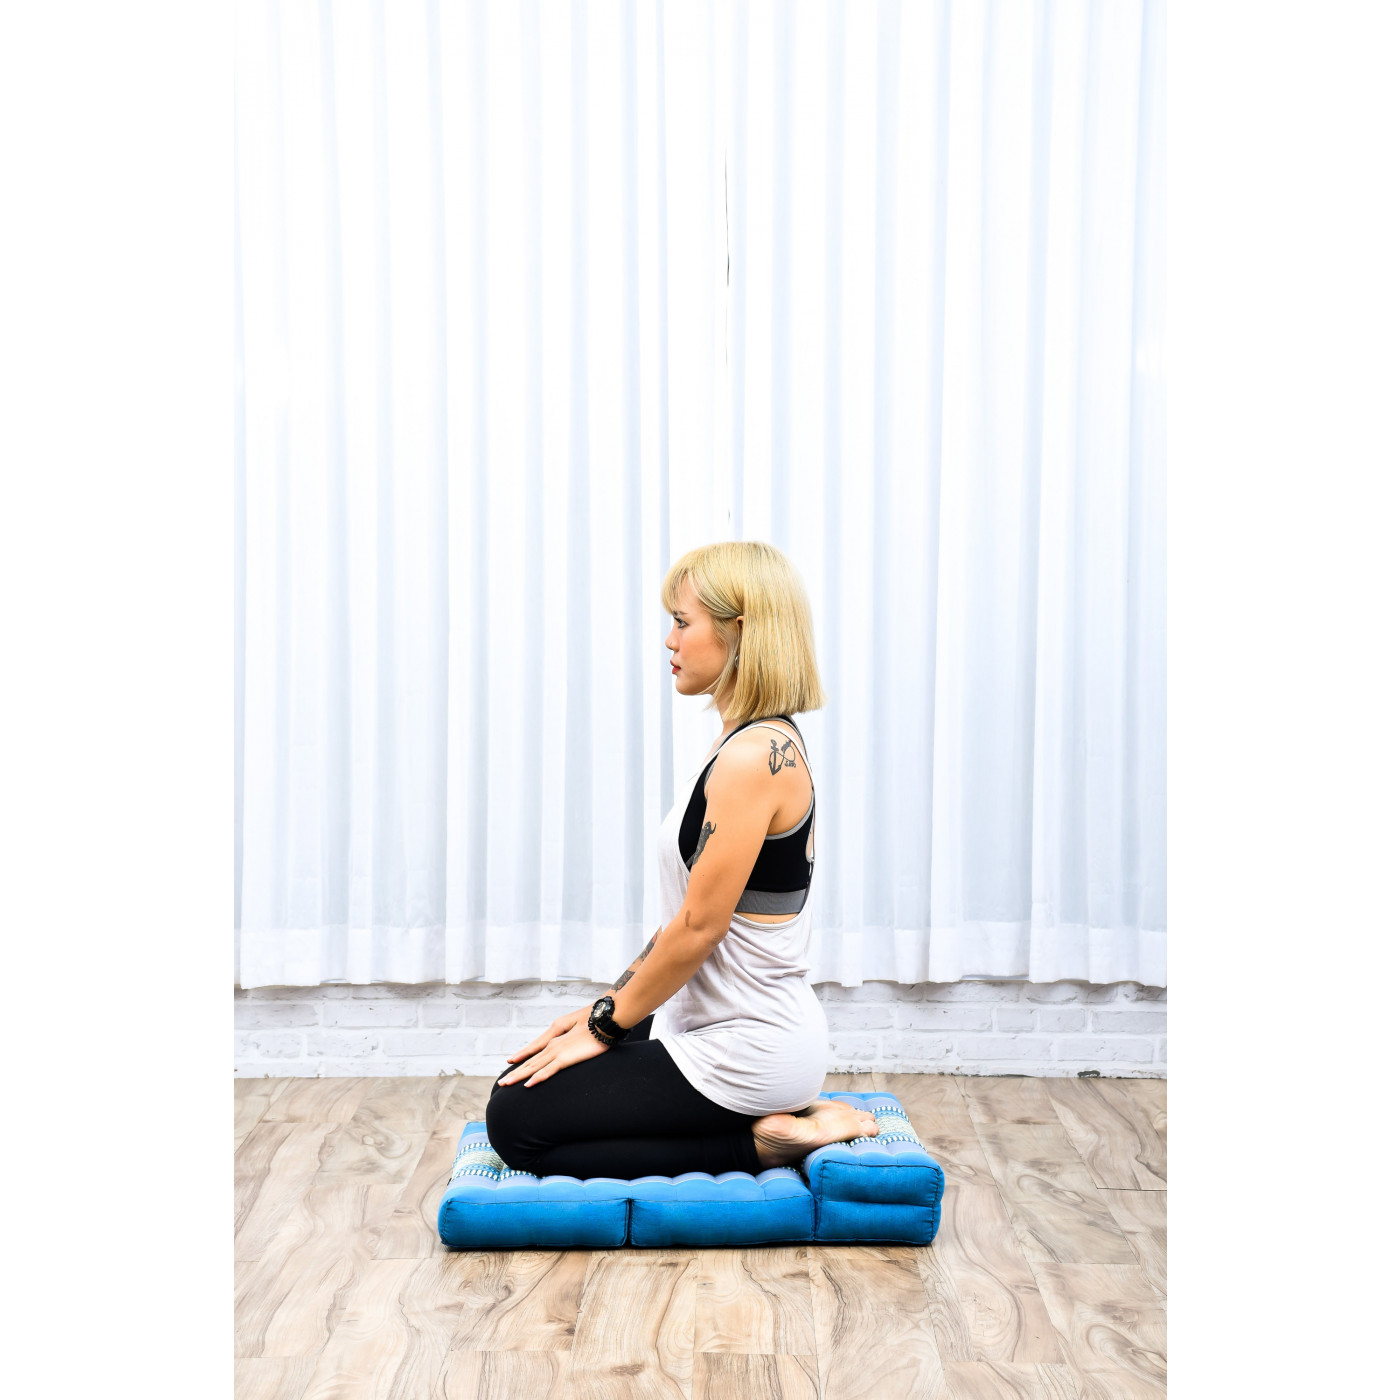 regolabile in altezza e larghezza solido Cuscino da yoga e meditazione piatto e morbido stabile e confortevole ANADEO YogaProducts colore: blu oceano Kapok ad alta densità 100% naturale 